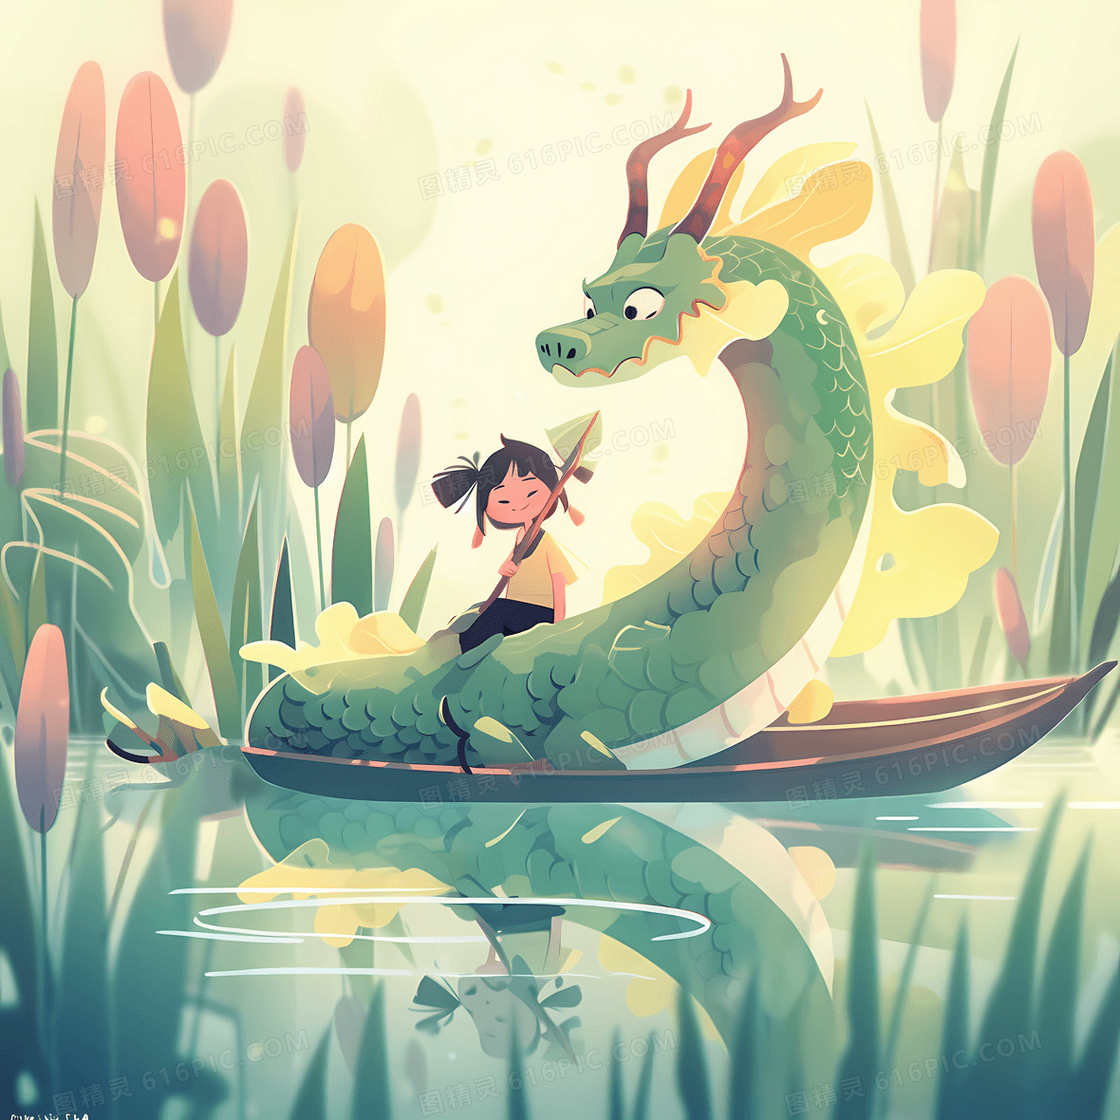 超可爱的小女孩和一条巨龙开心的划船游湖